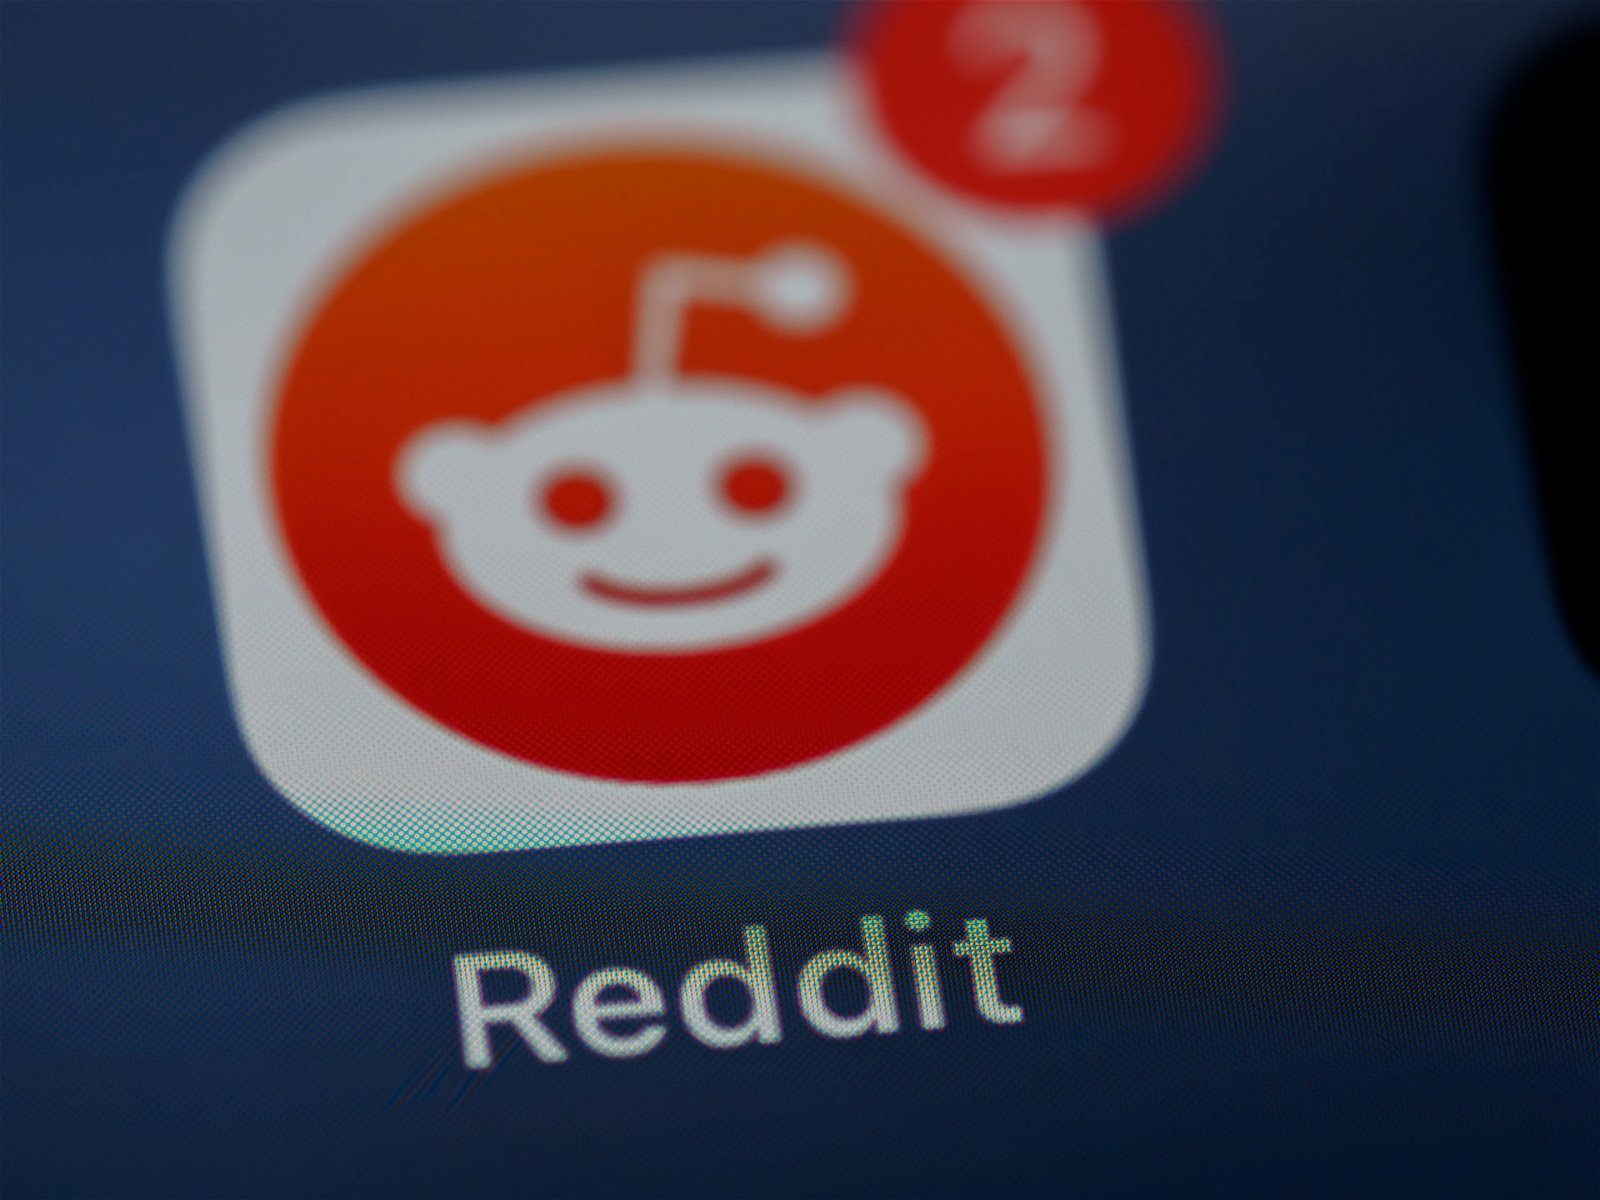 El logo de Reddit en un teléfono móvil